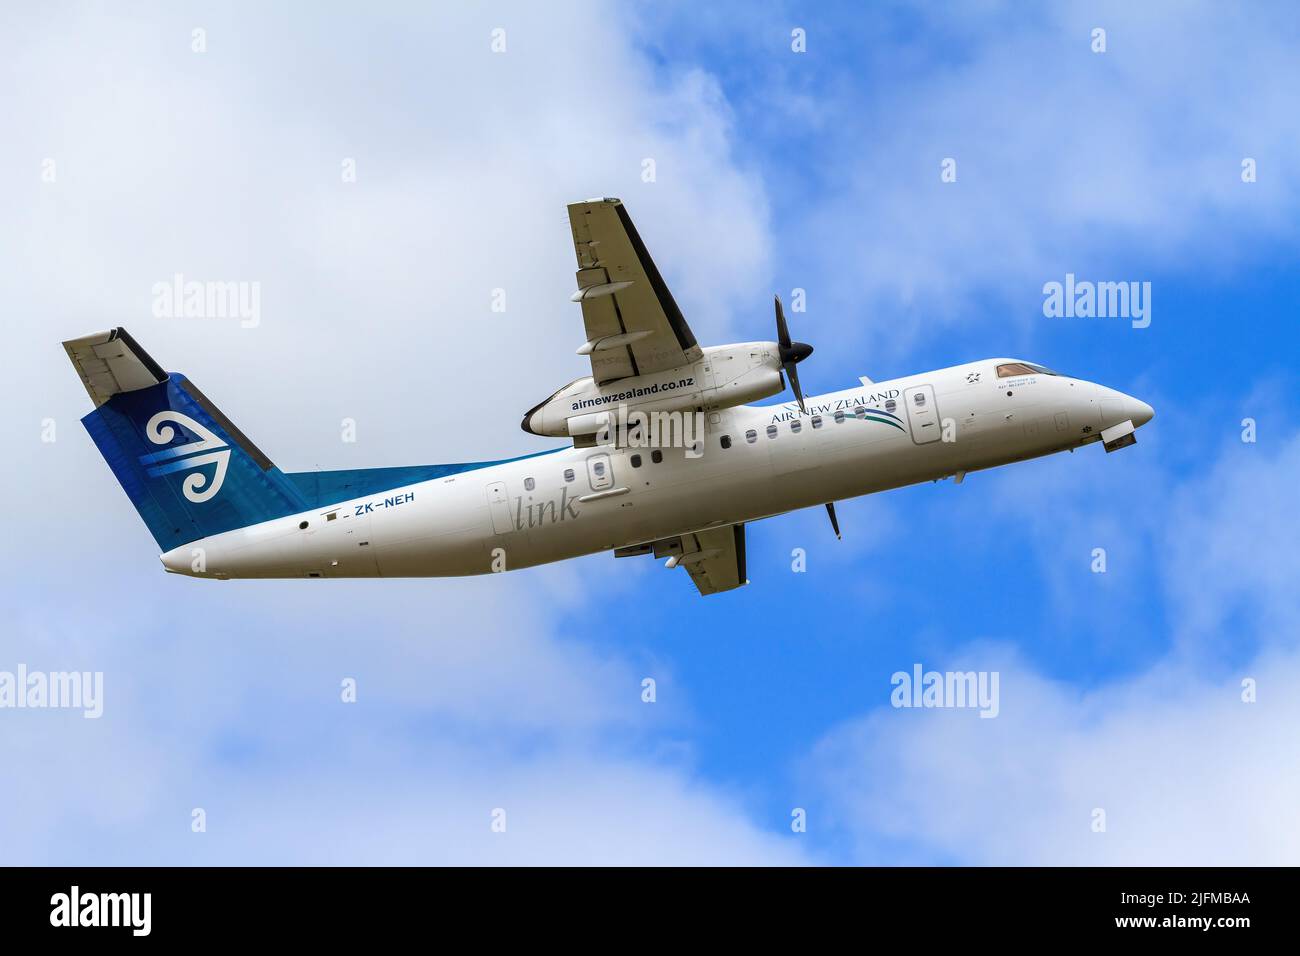 An Air New Zealand De Havilland Dash 8 in the sky. Photographed at Mount Maunganui, New Zealand Stock Photo